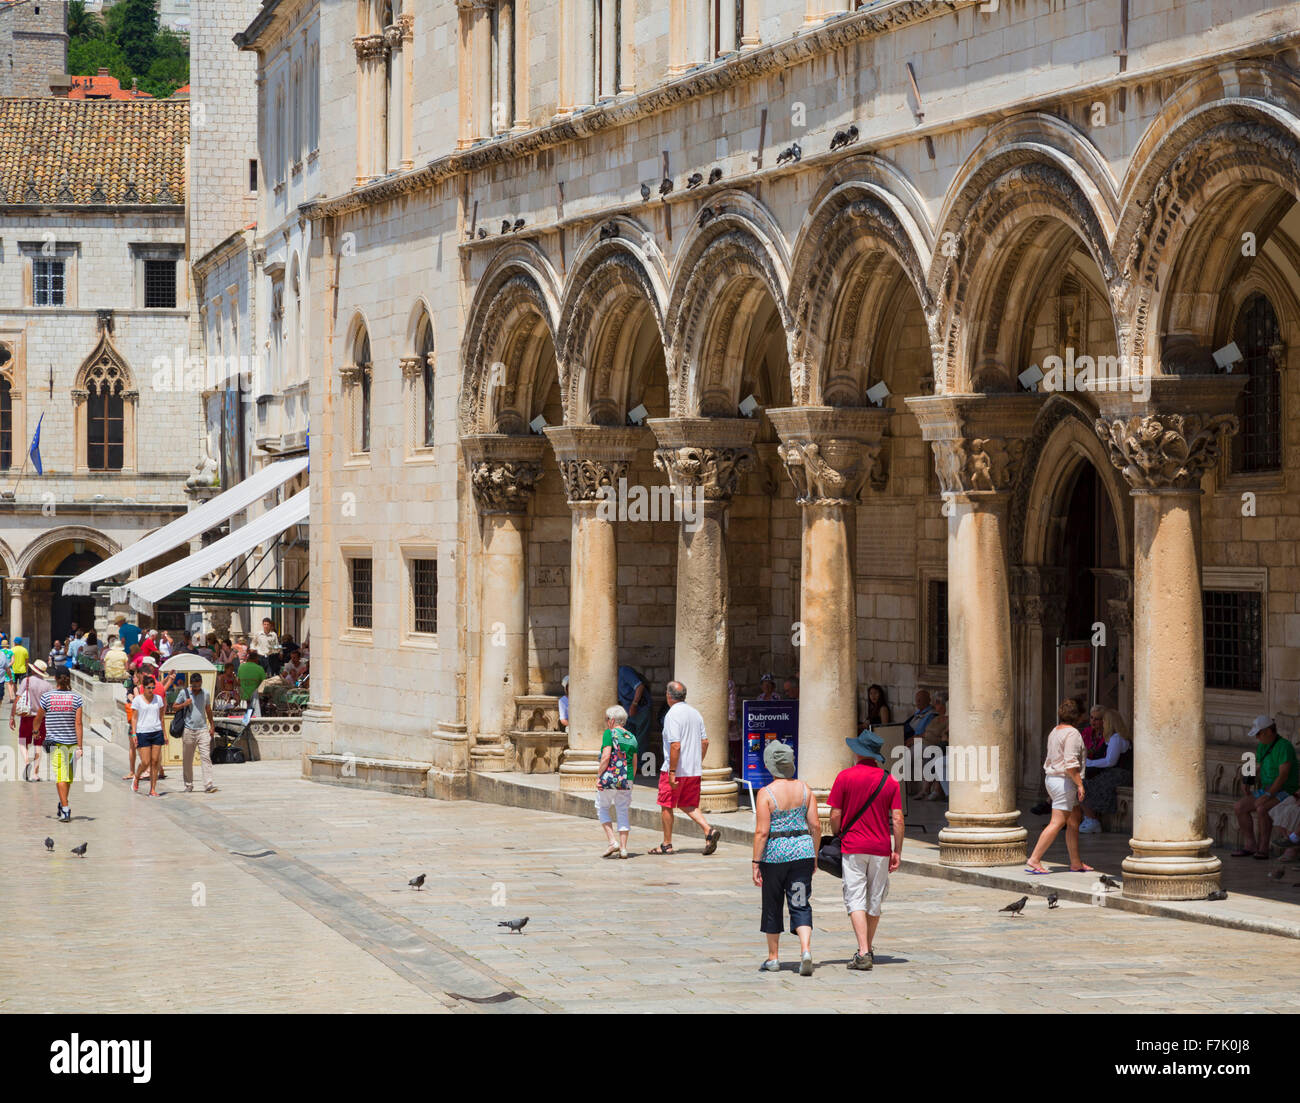 Dubrovnik, Dubrovnik-Neretva County, Croazia. Pred Dvorom Street nella città vecchia. Sulla destra, gli archi del Palazzo del Rettore. Foto Stock